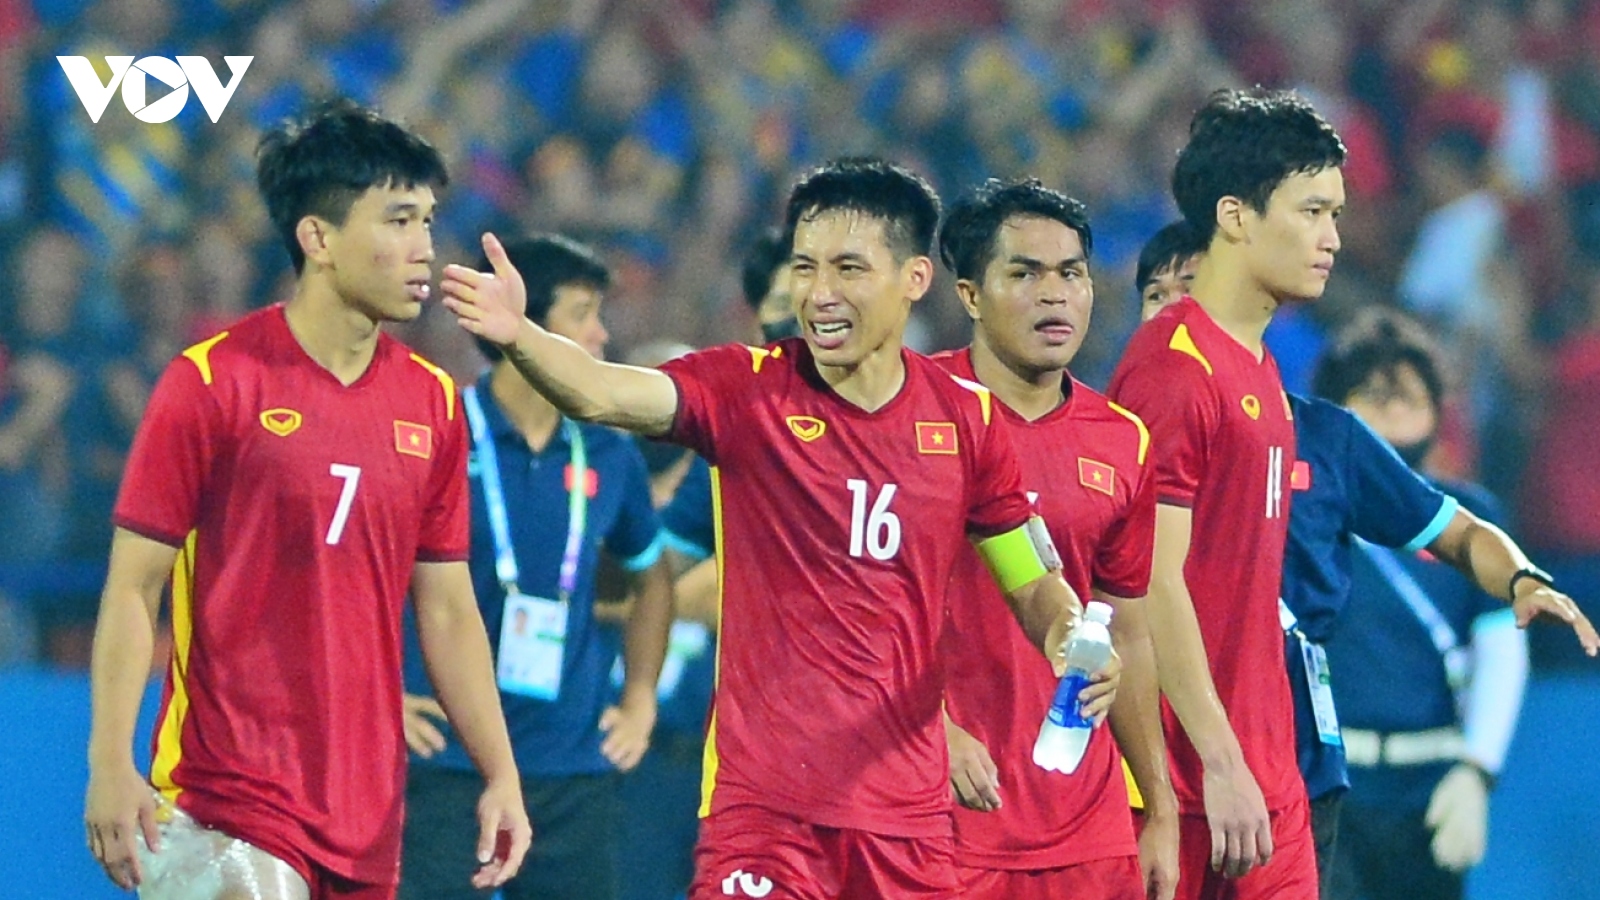 Hùng Dũng bật khóc khi U23 Việt Nam vào chung kết gặp U23 Thái Lan